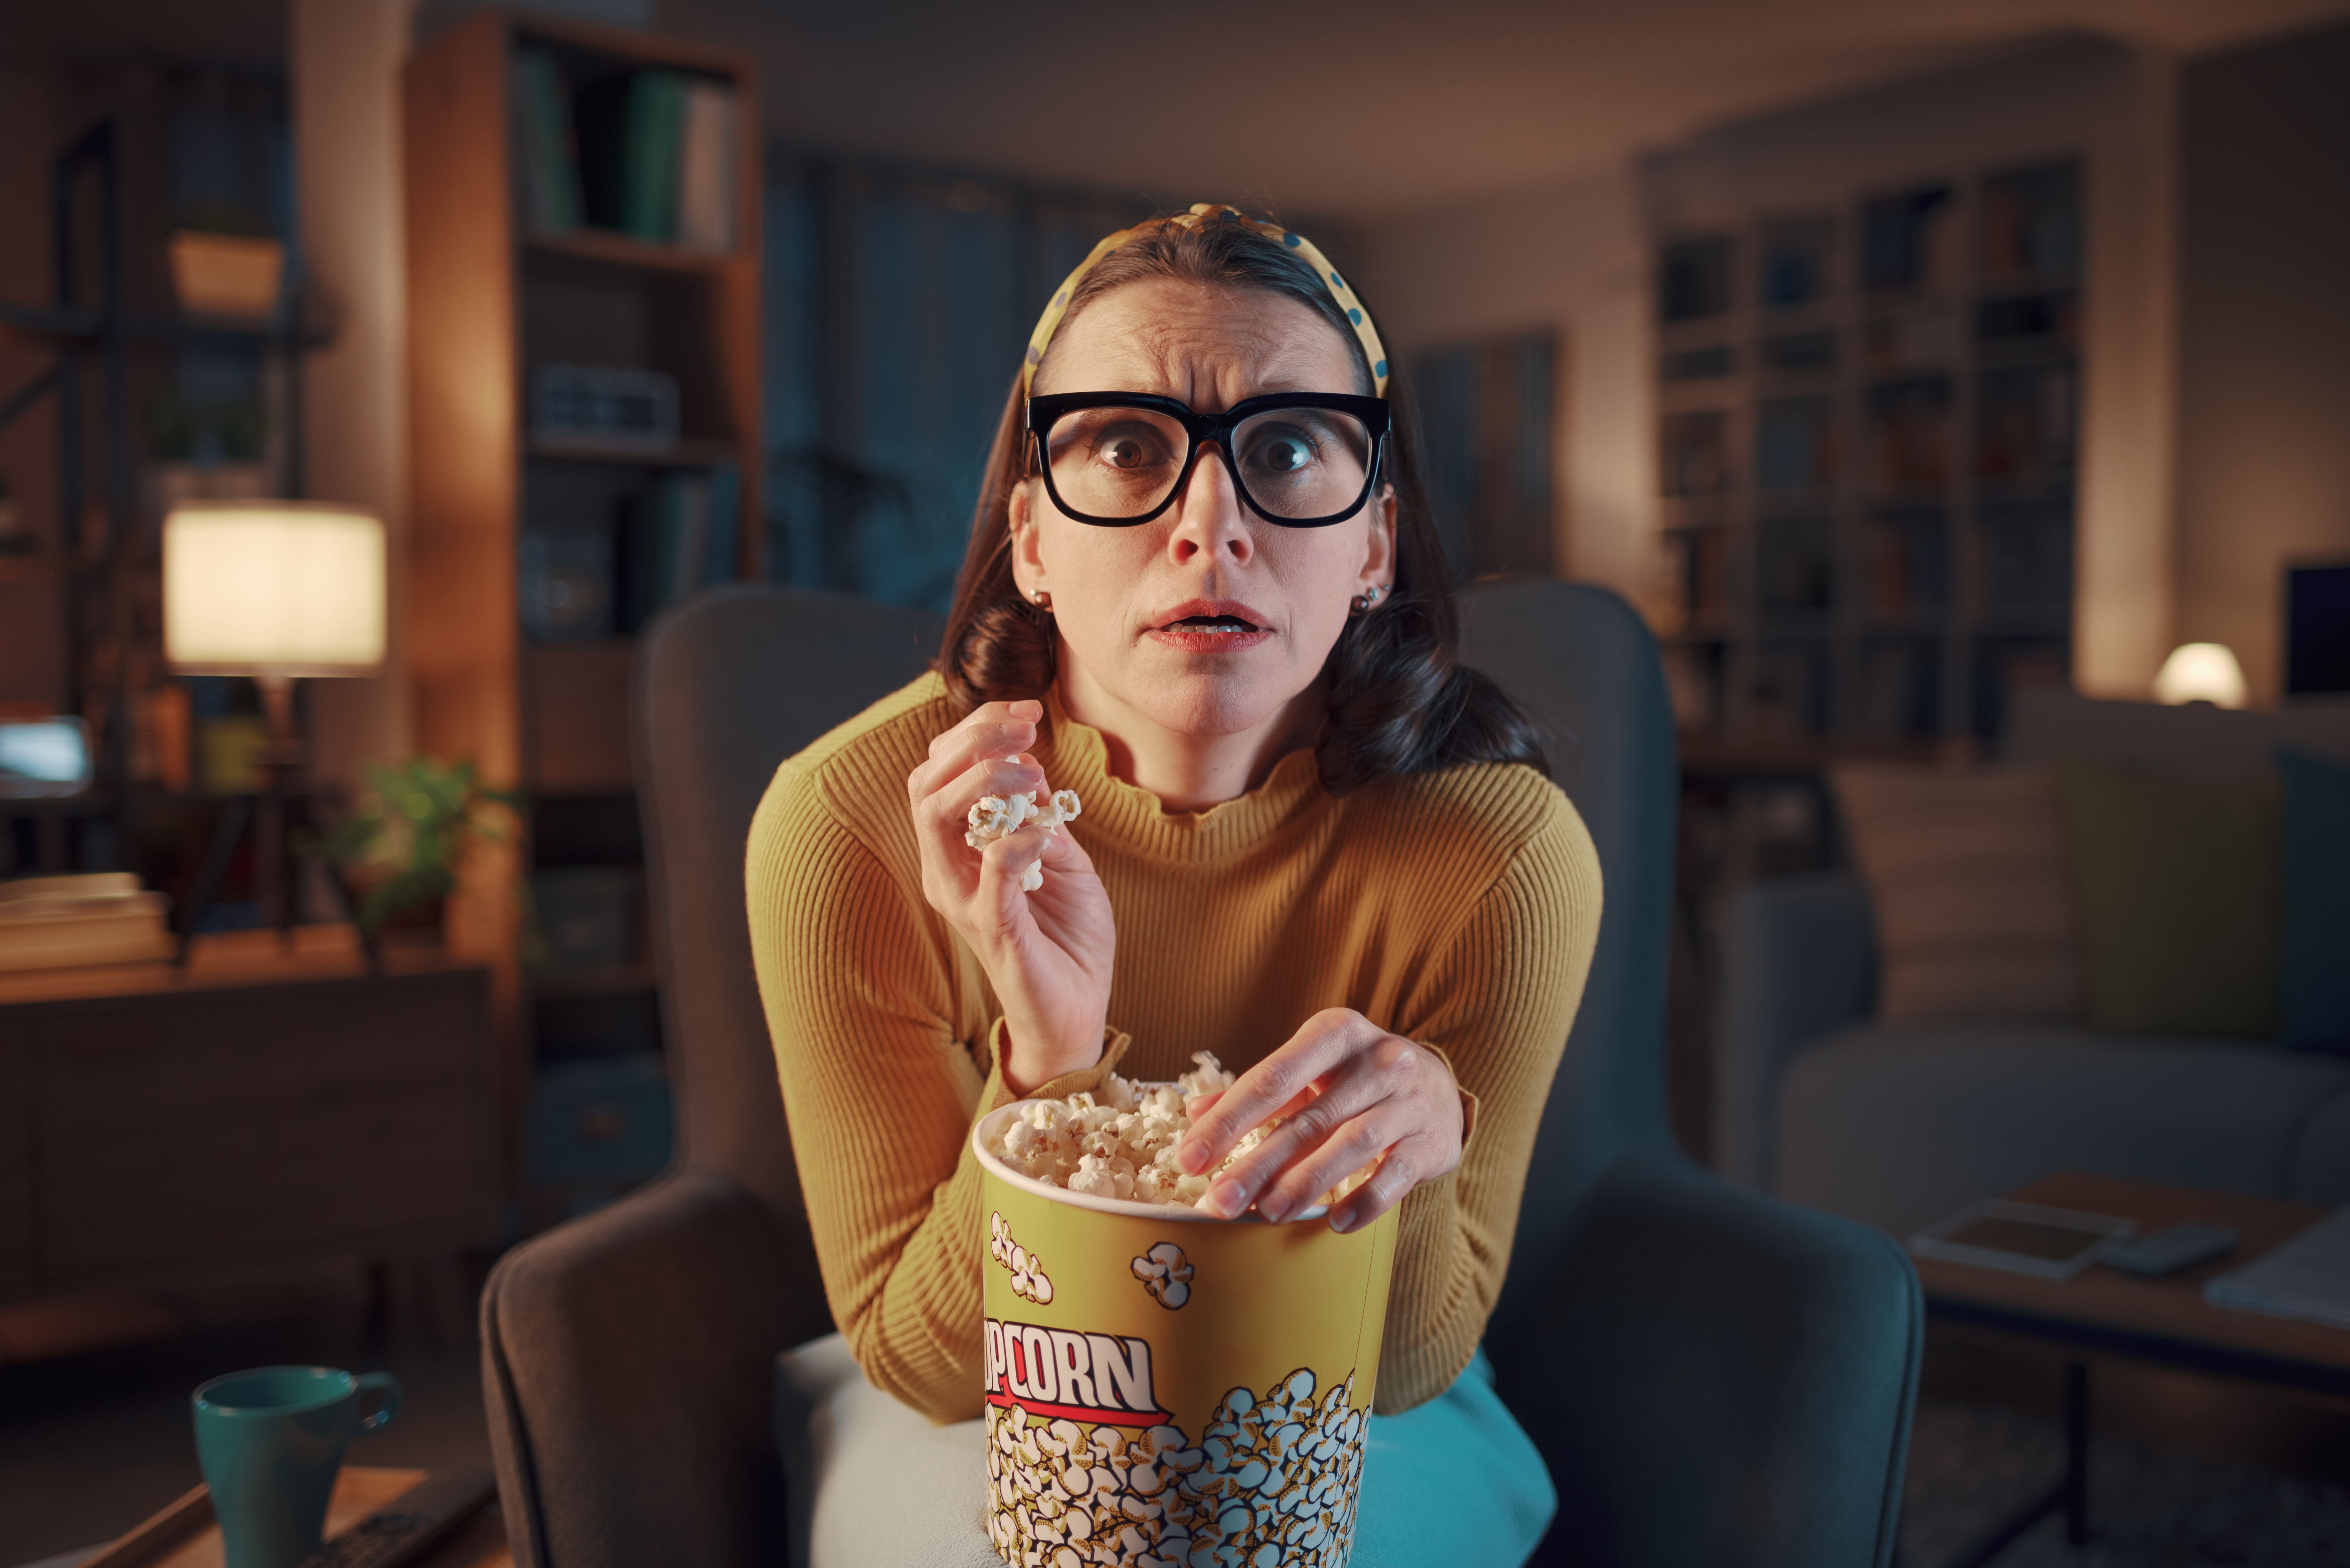 Mulher com expressão assustada comendo pipoca enquanto assiste televisão na sala.